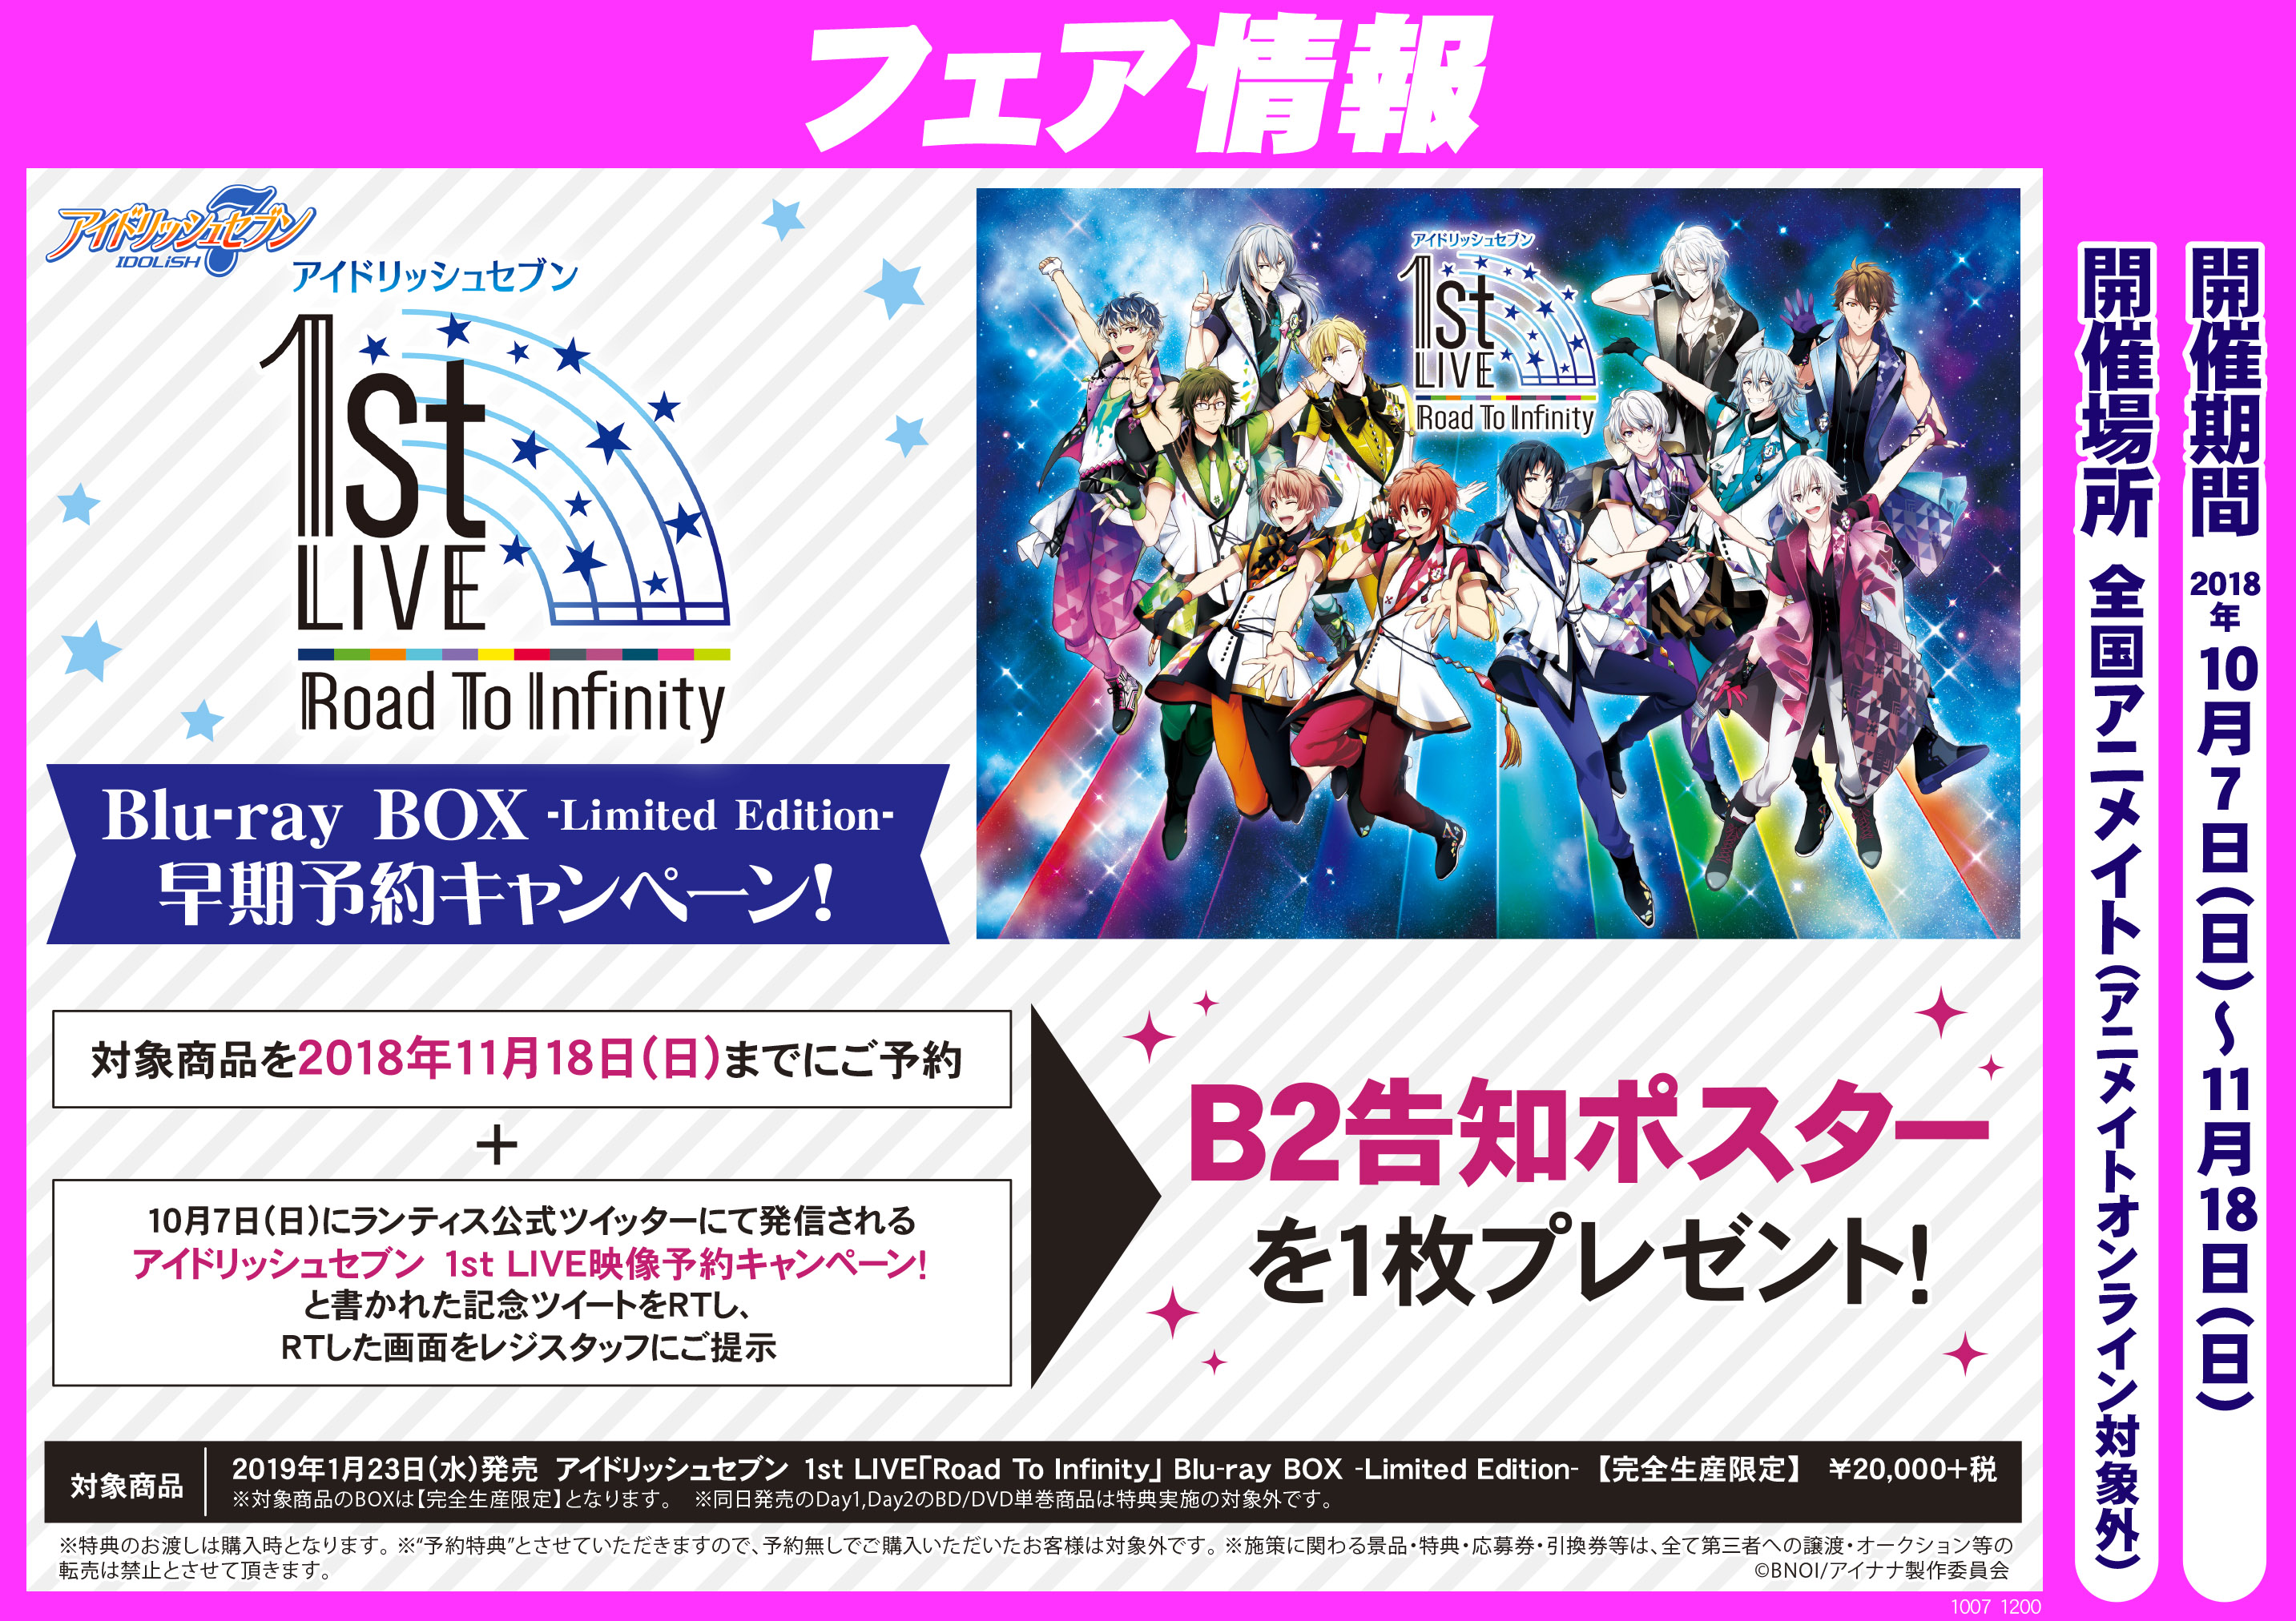 アイドリッシュセブン 1st LIVE「Road To Infinity」Blu-ray BOX早期予約キャンペーン!開催中です